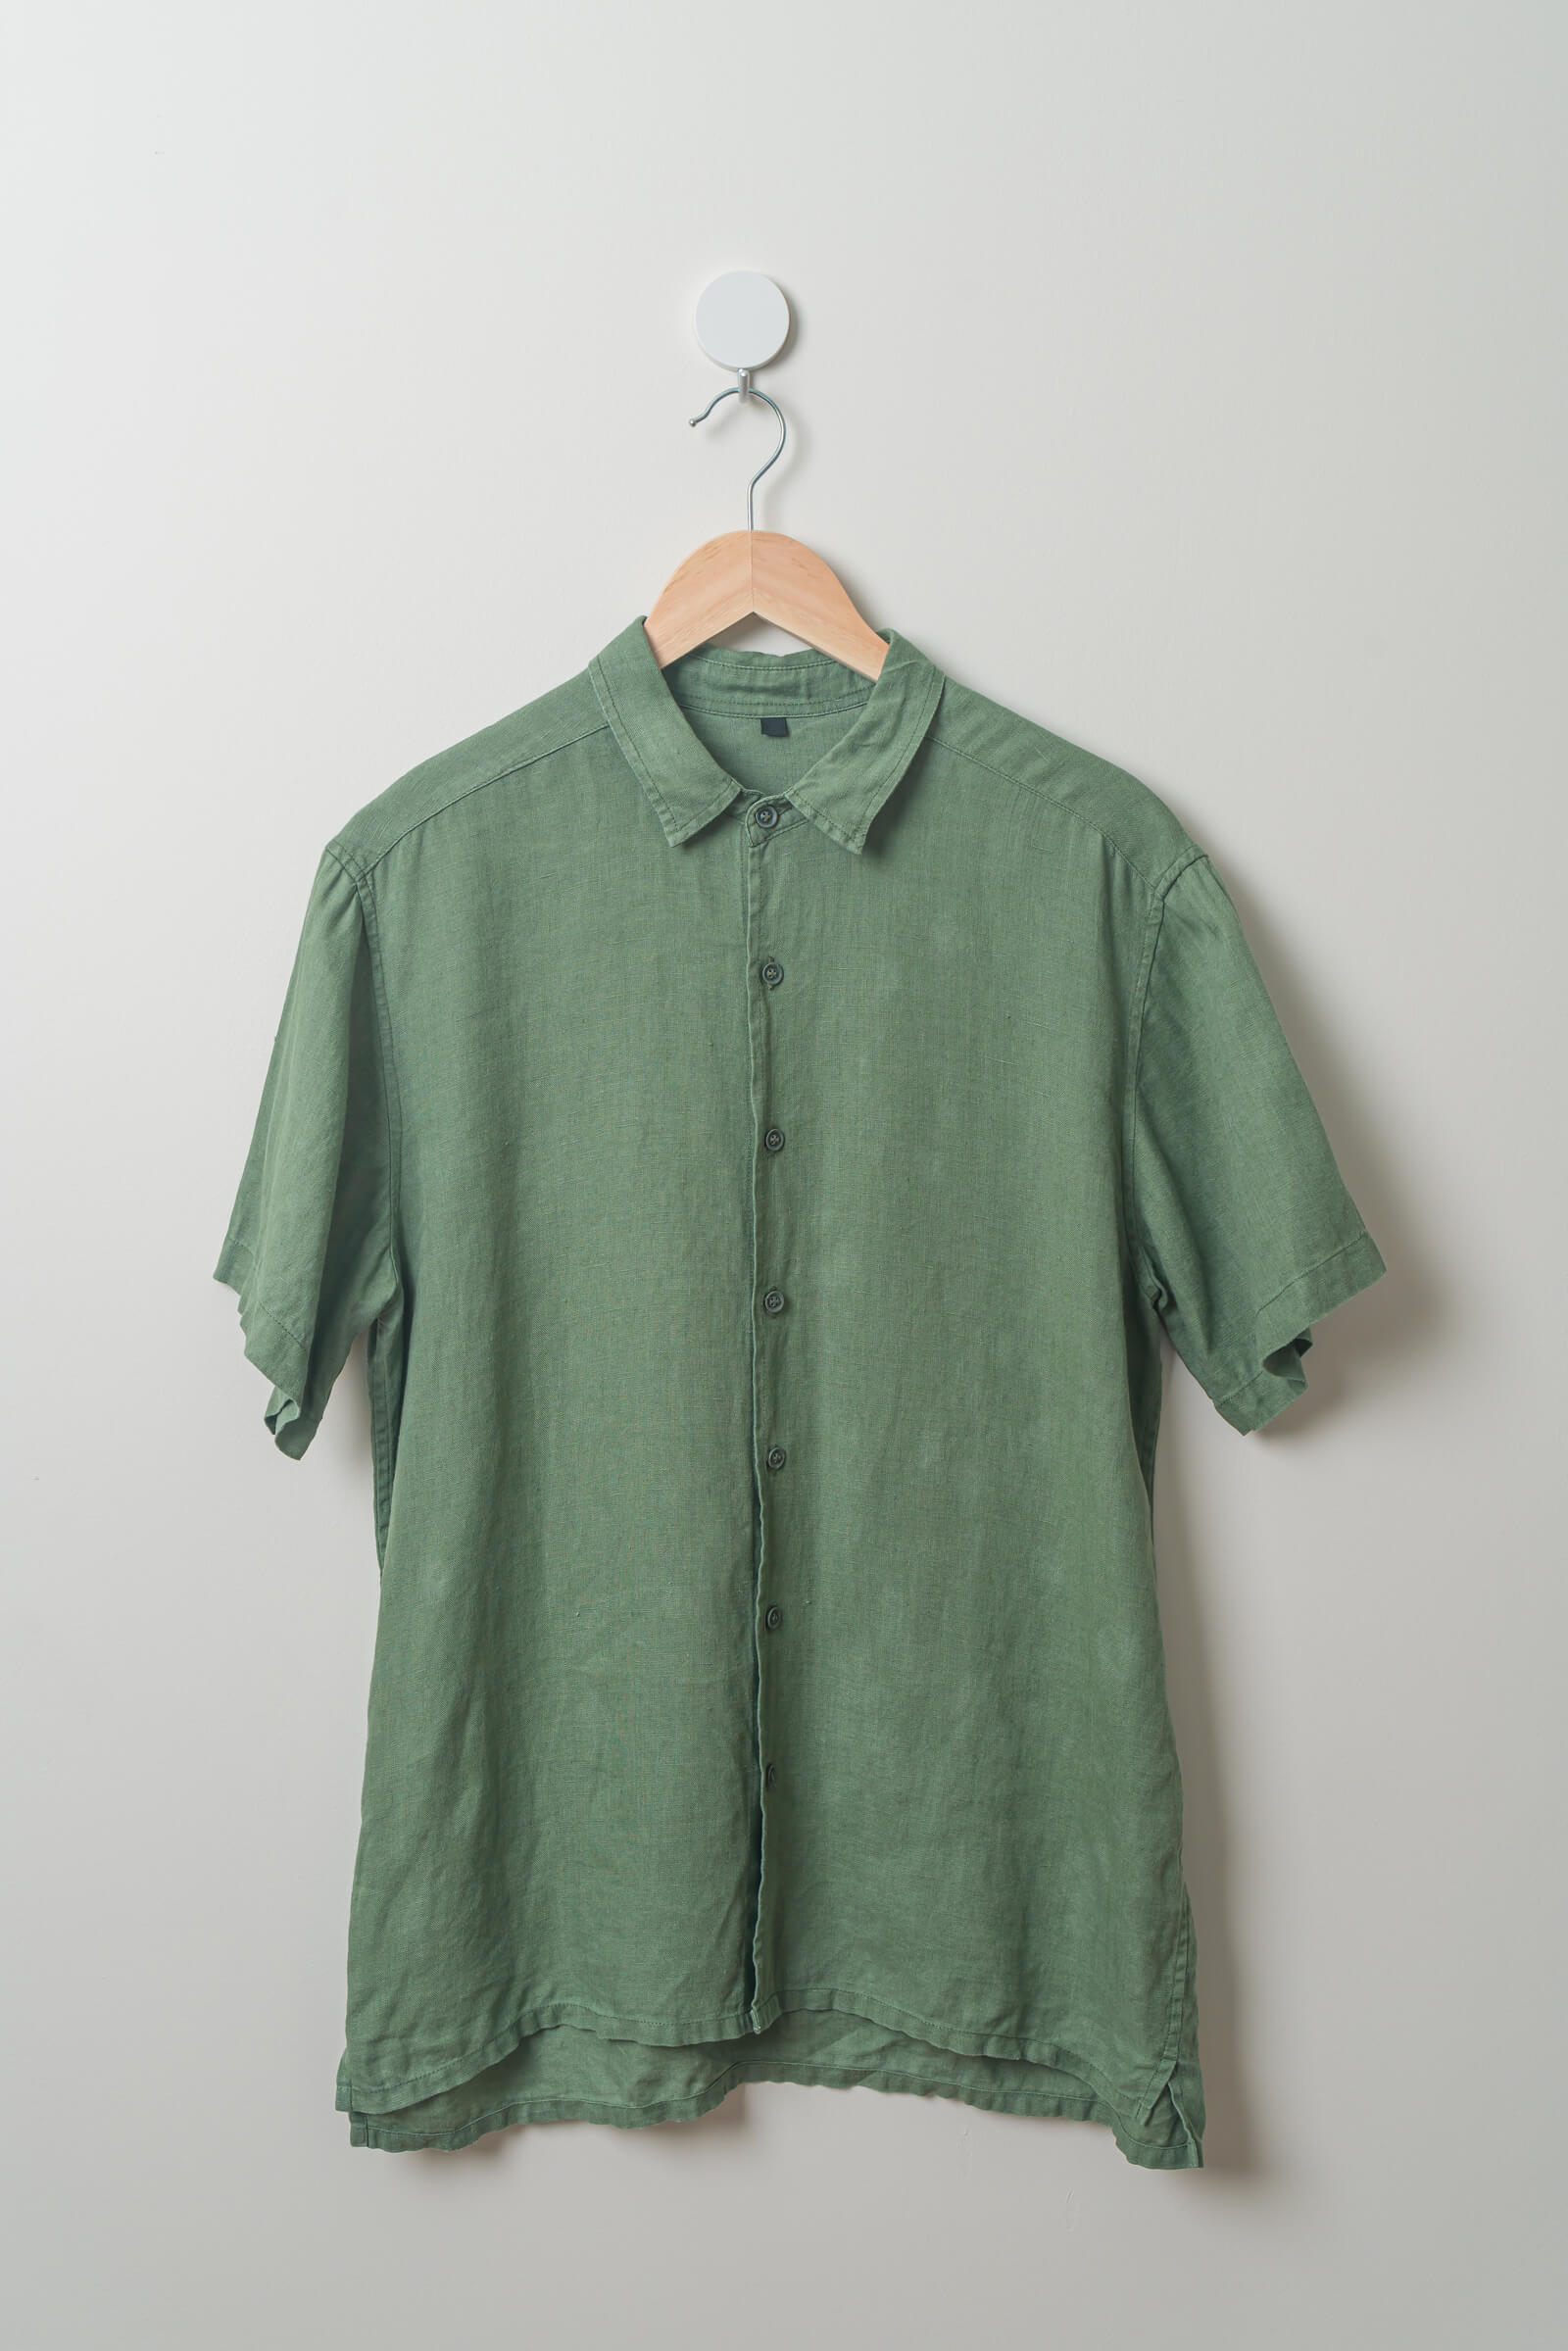 Dress Shirt / Forest Green